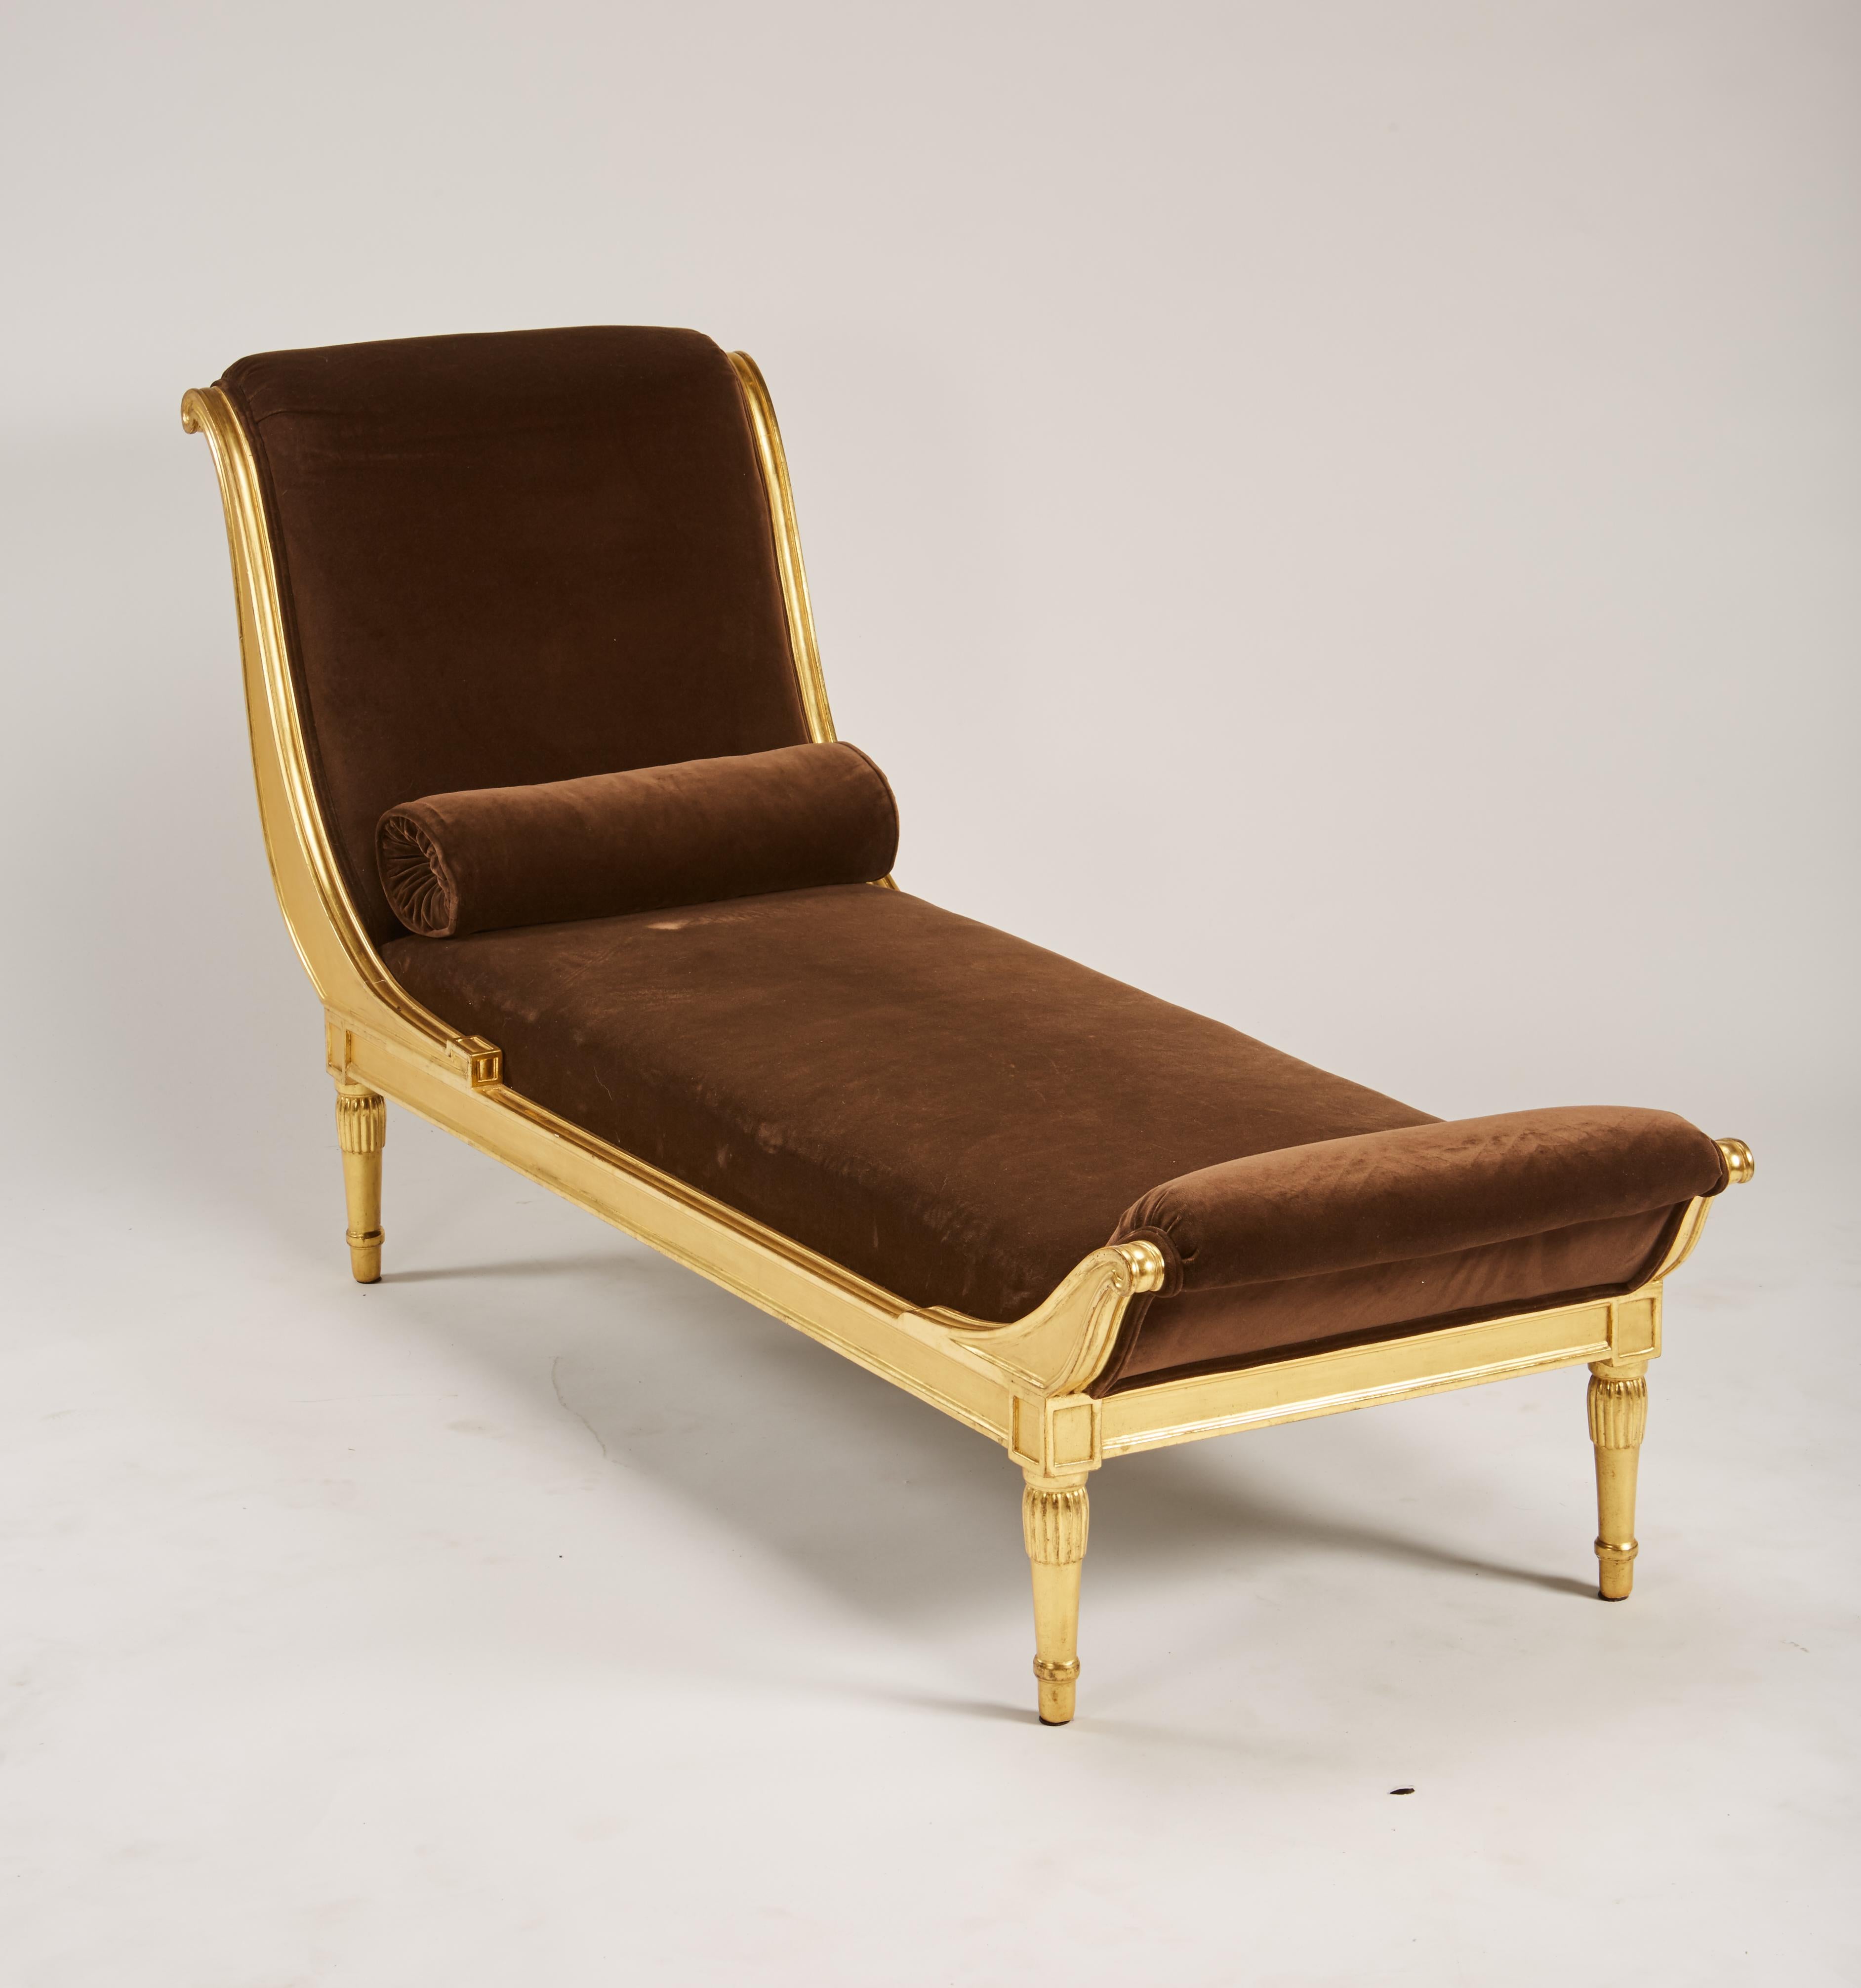 Rare et élégante chaise longue en bois doré de Charlotte Chauchet-Guilleré pour l'Atelier Primavera, vers 1920, avec un revêtement plus ancien en velours brun. Usure de la dorure par endroits, quelques marques sur le velours. Provenance Christie's